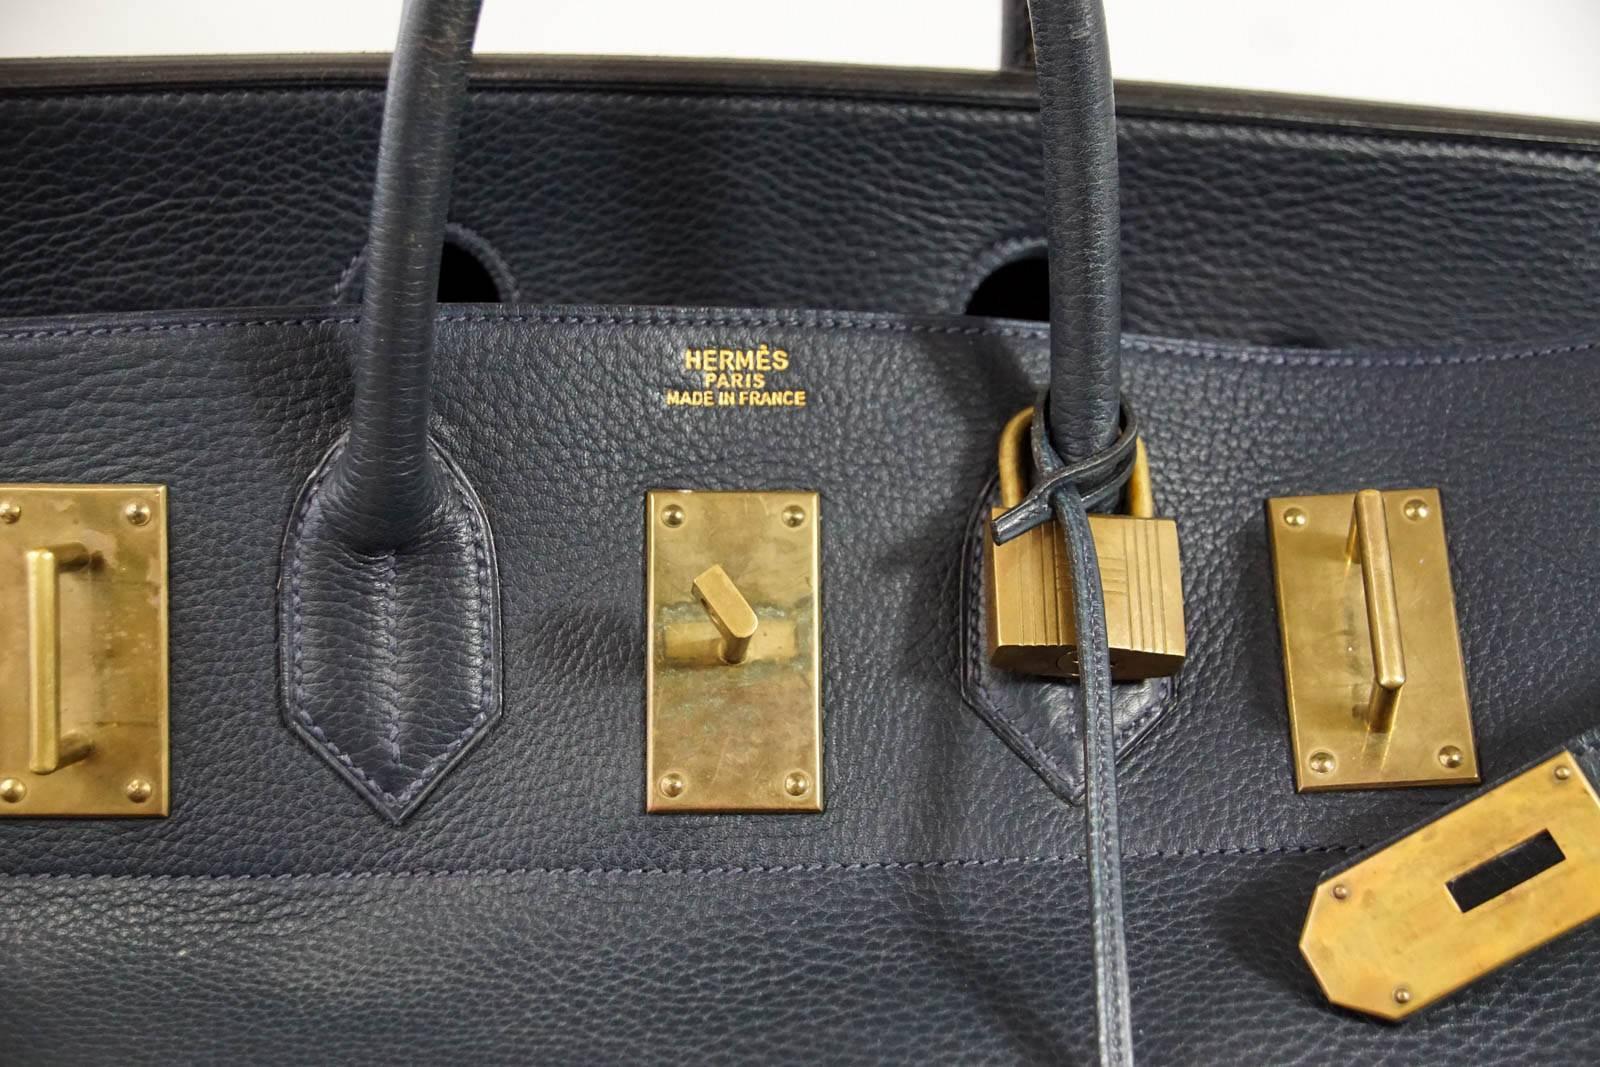 Garantie d'authenticité et de rareté de l'Hermès Hac Vintage 55 en cuir Fjord:: très convoité dans la marine.  
Une combinaison saisissante avec une quincaillerie en laiton vieilli.   
Ce magnifique sac est un véritable trésor de collectionneur